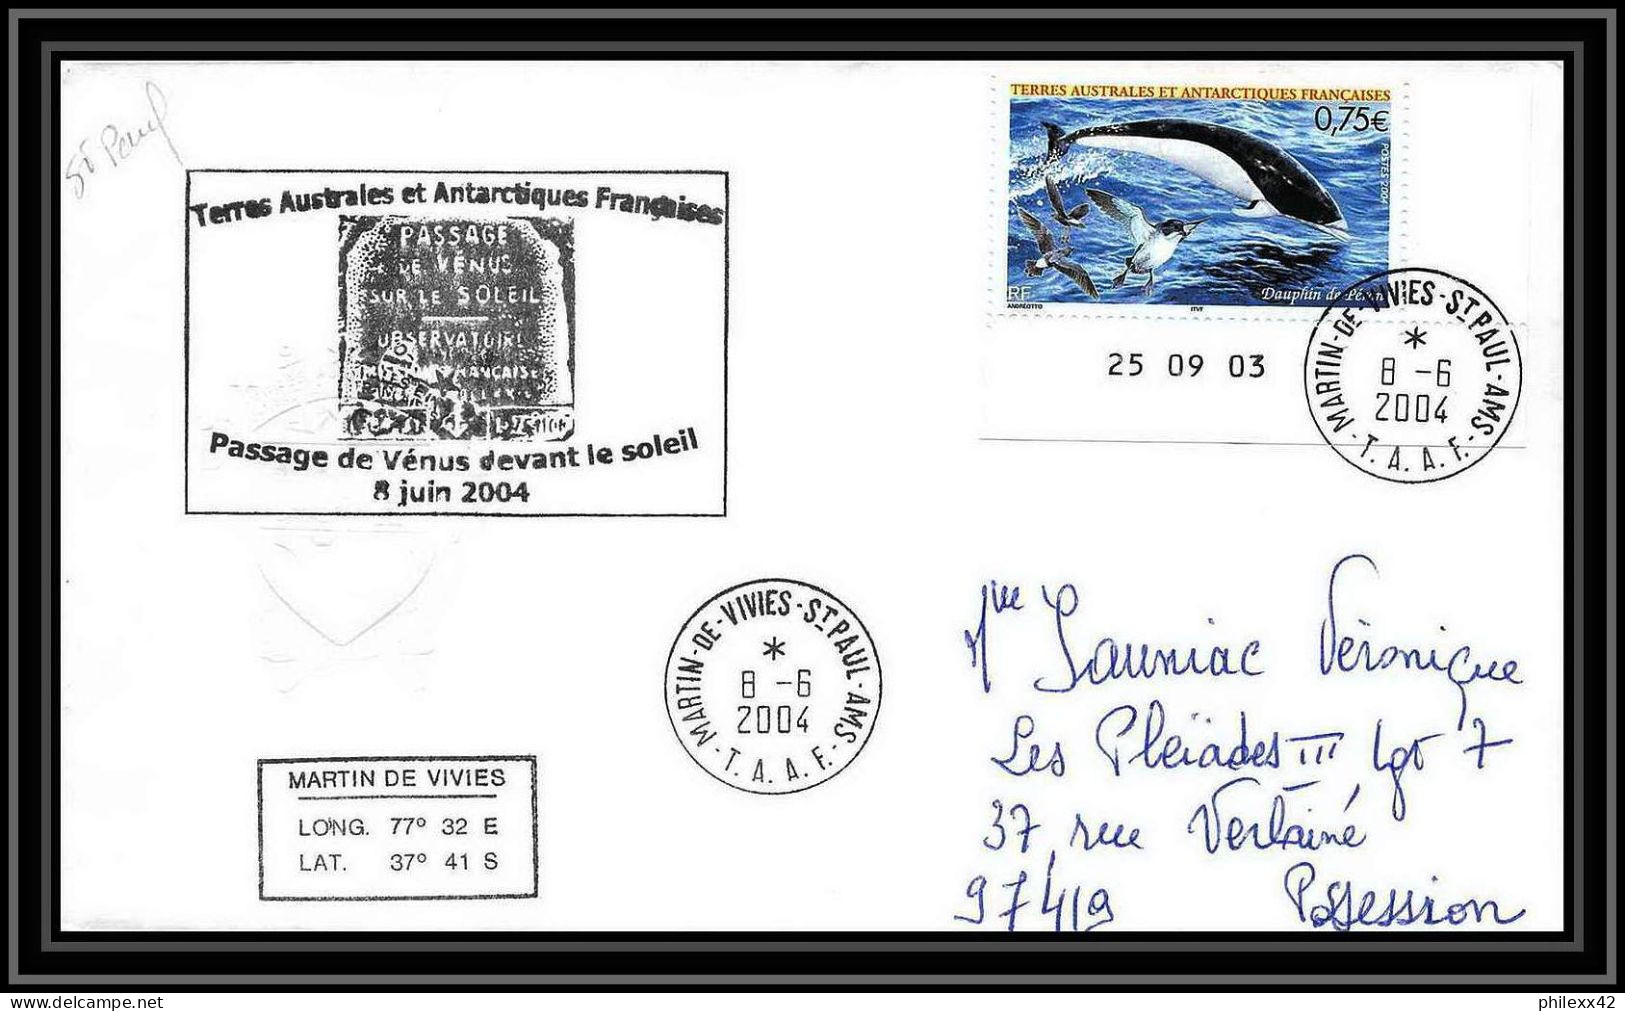 2446 ANTARCTIC Terres Australes TAAF Lettre Dufresne 2 N°395 PASSAGE DE VENUS DEVANT LE SOLEIL 2004 Coin Daté Dauphin - Expediciones Antárticas